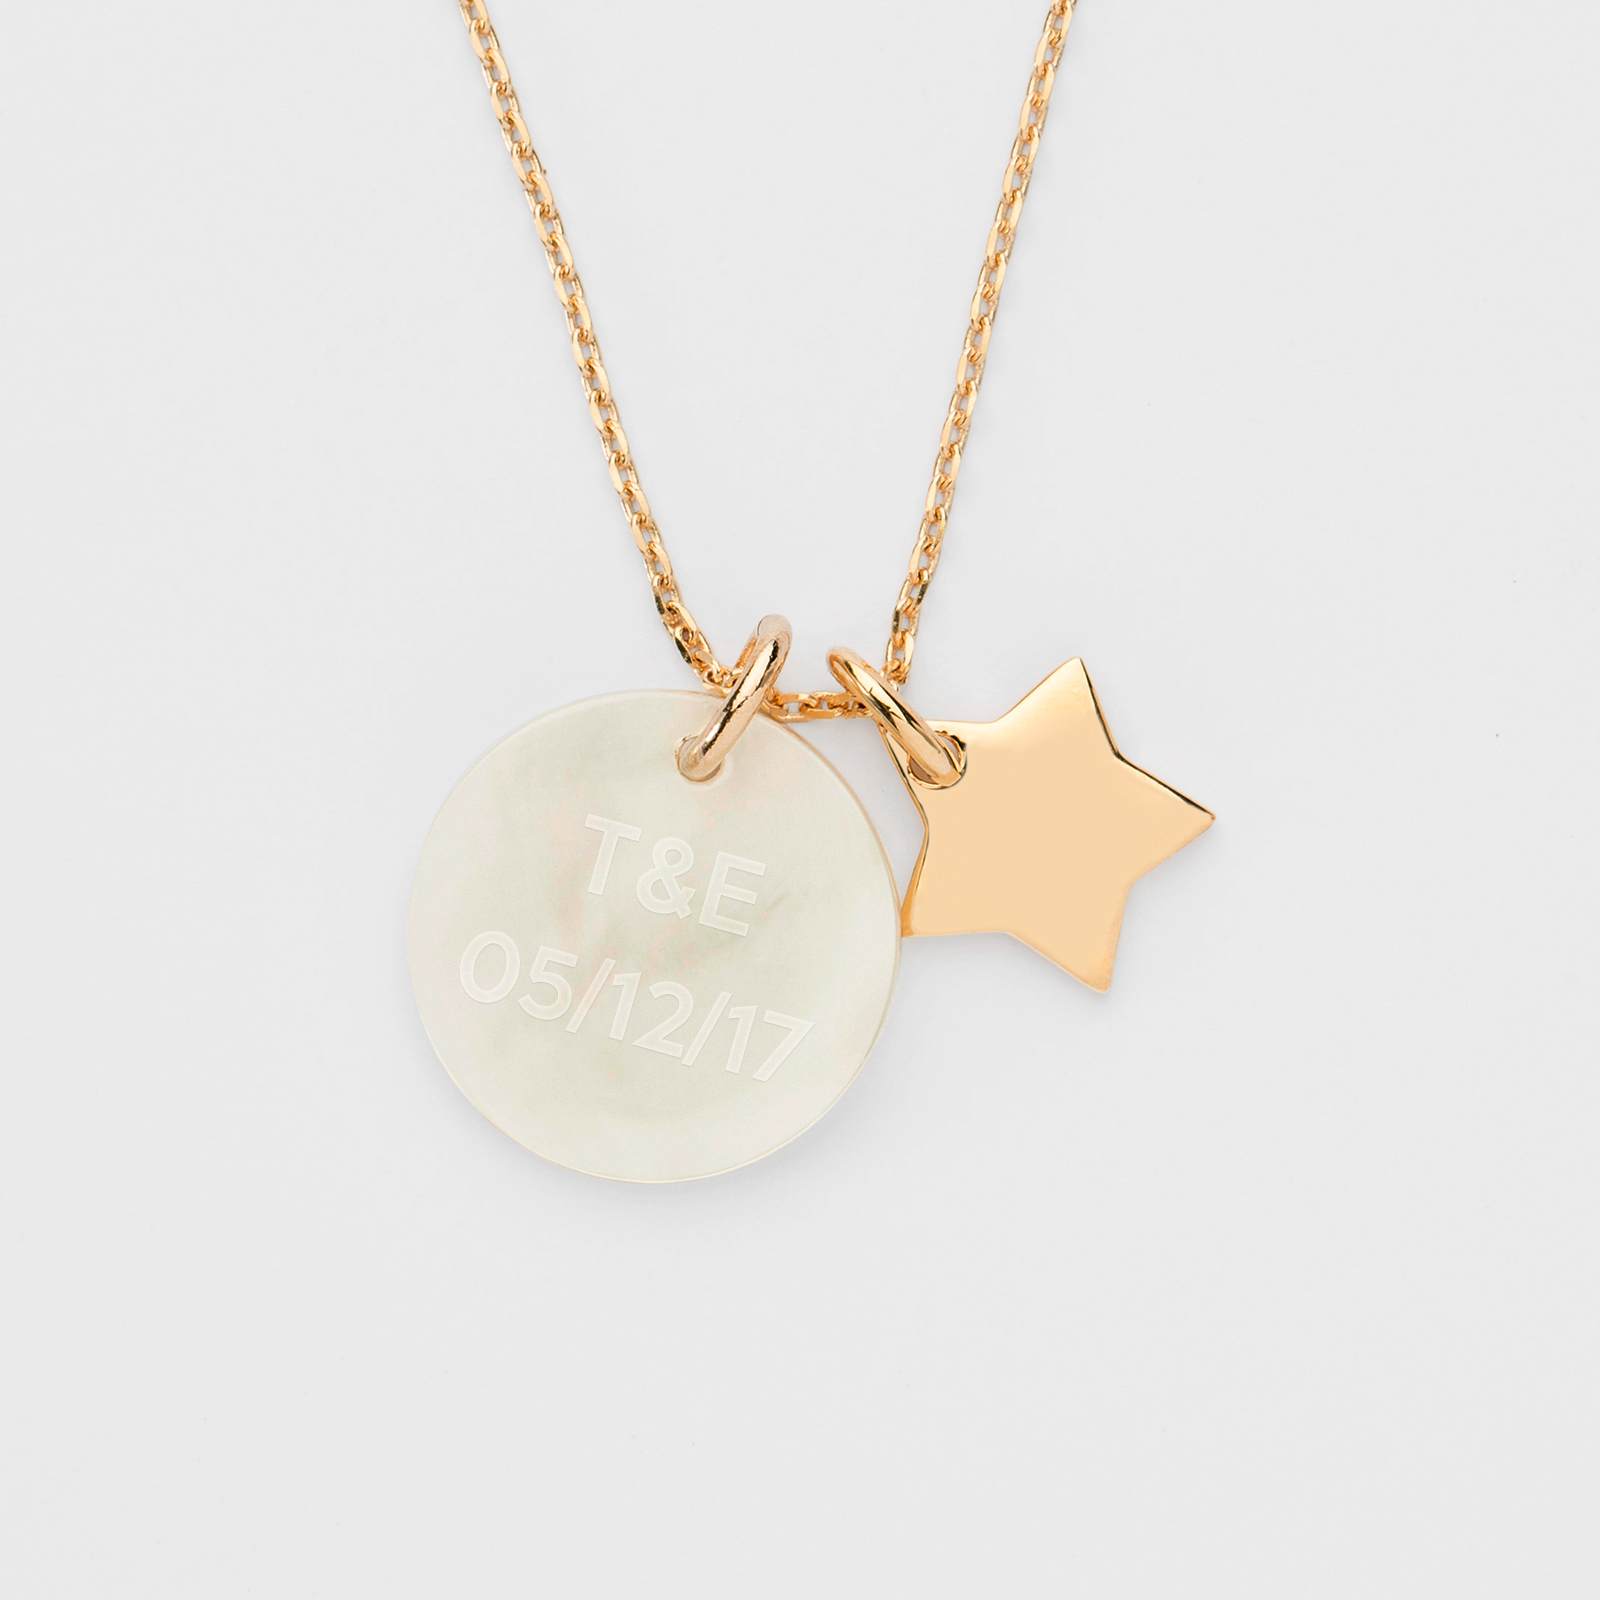 Collier enfant médaille et étoile en nacre personnalisable (plaqué or)